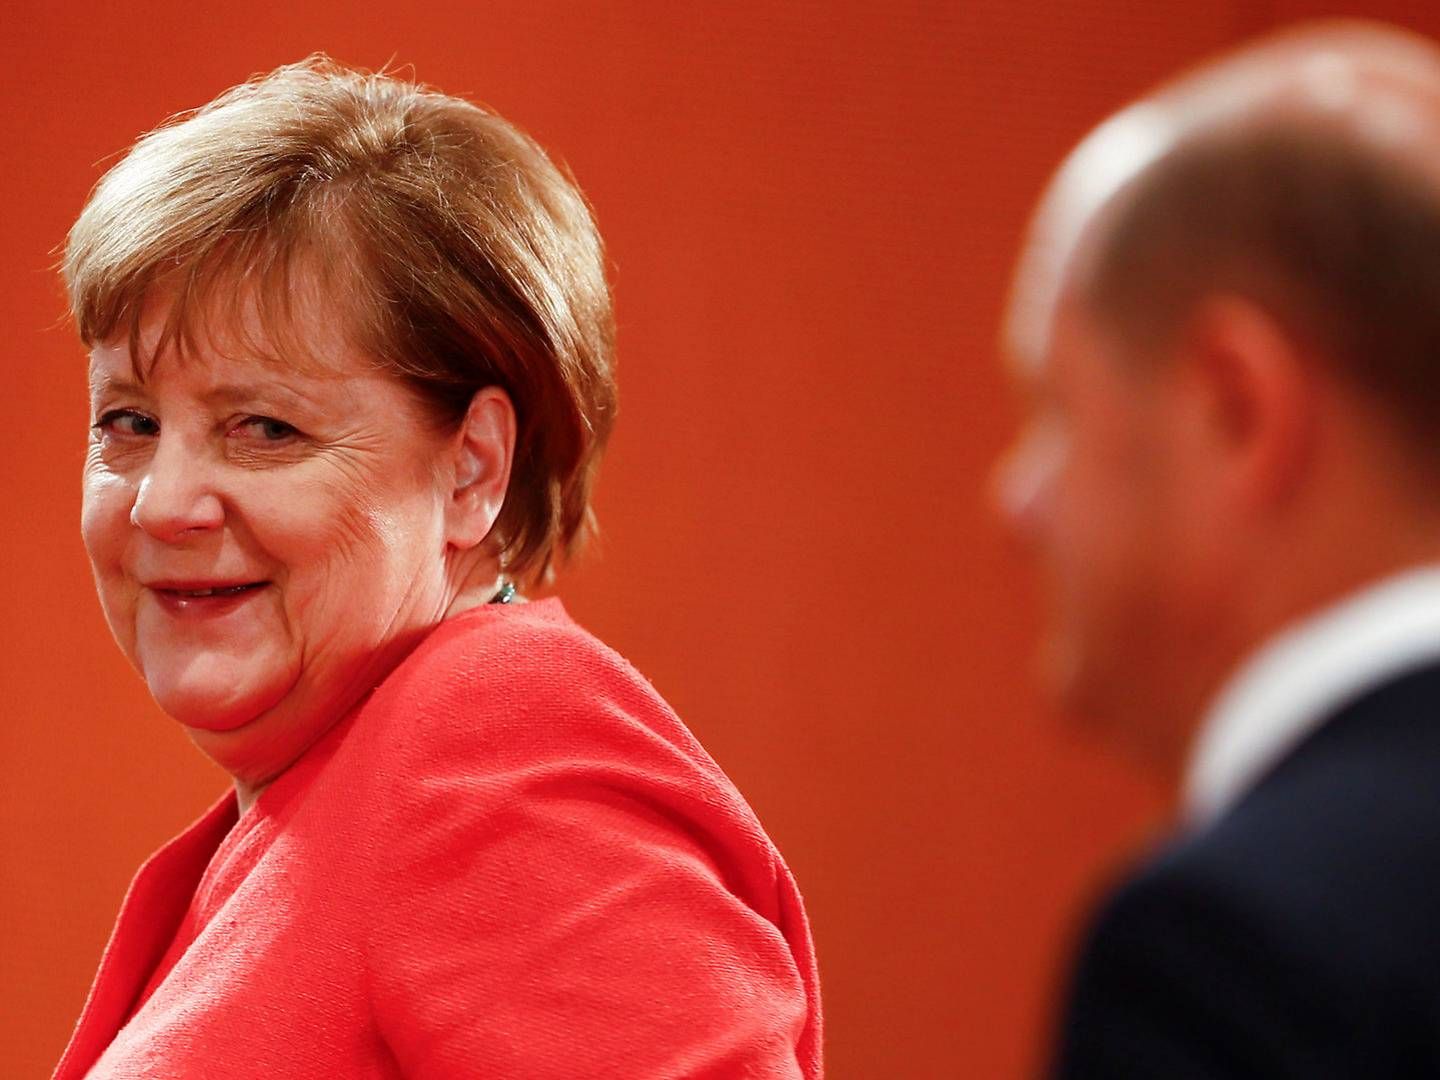 Håndteringen af det næste års formandskab i EU bliver en stor del af Angela Merkels politiske eftermæle. | Foto: Hannibal Hanschke/Reuters/Ritzau Scanpix